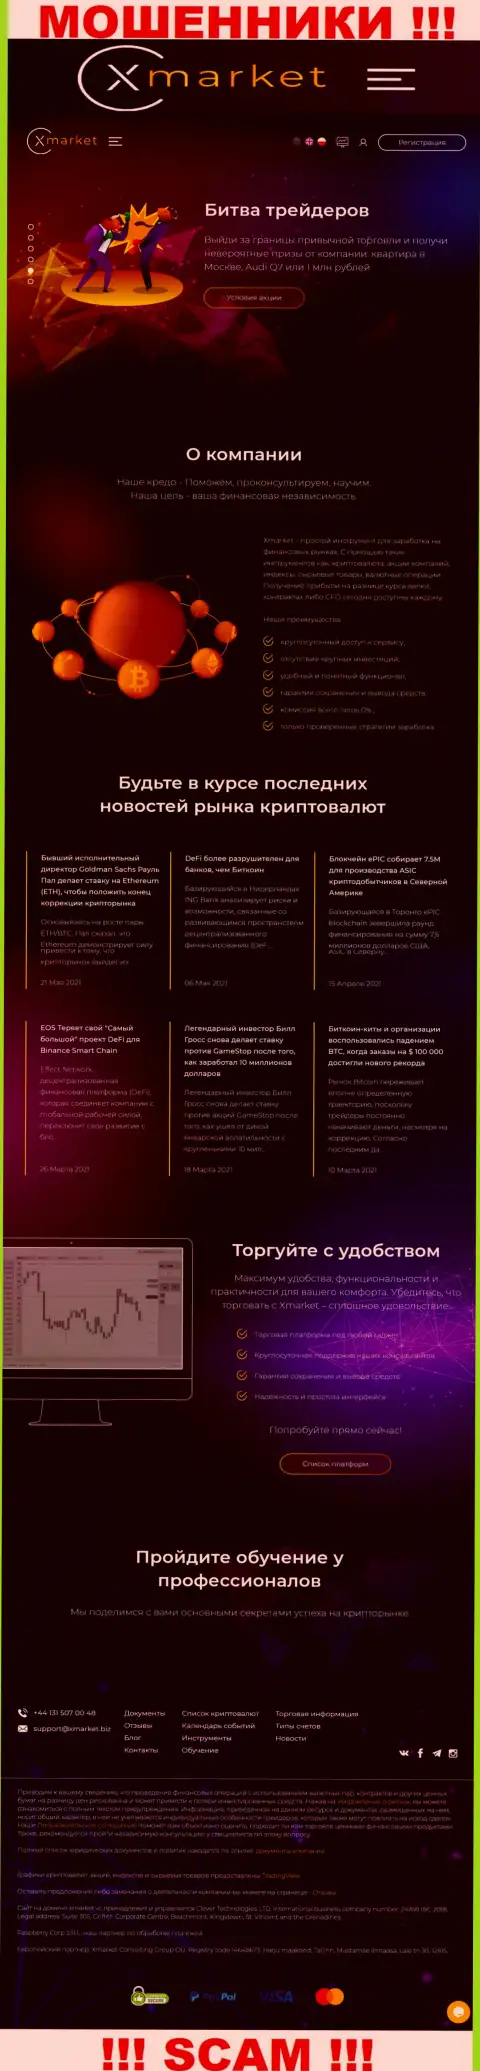 Официальный сервис internet мошенников и обманщиков компании Клевер Технолоджис ЛТД